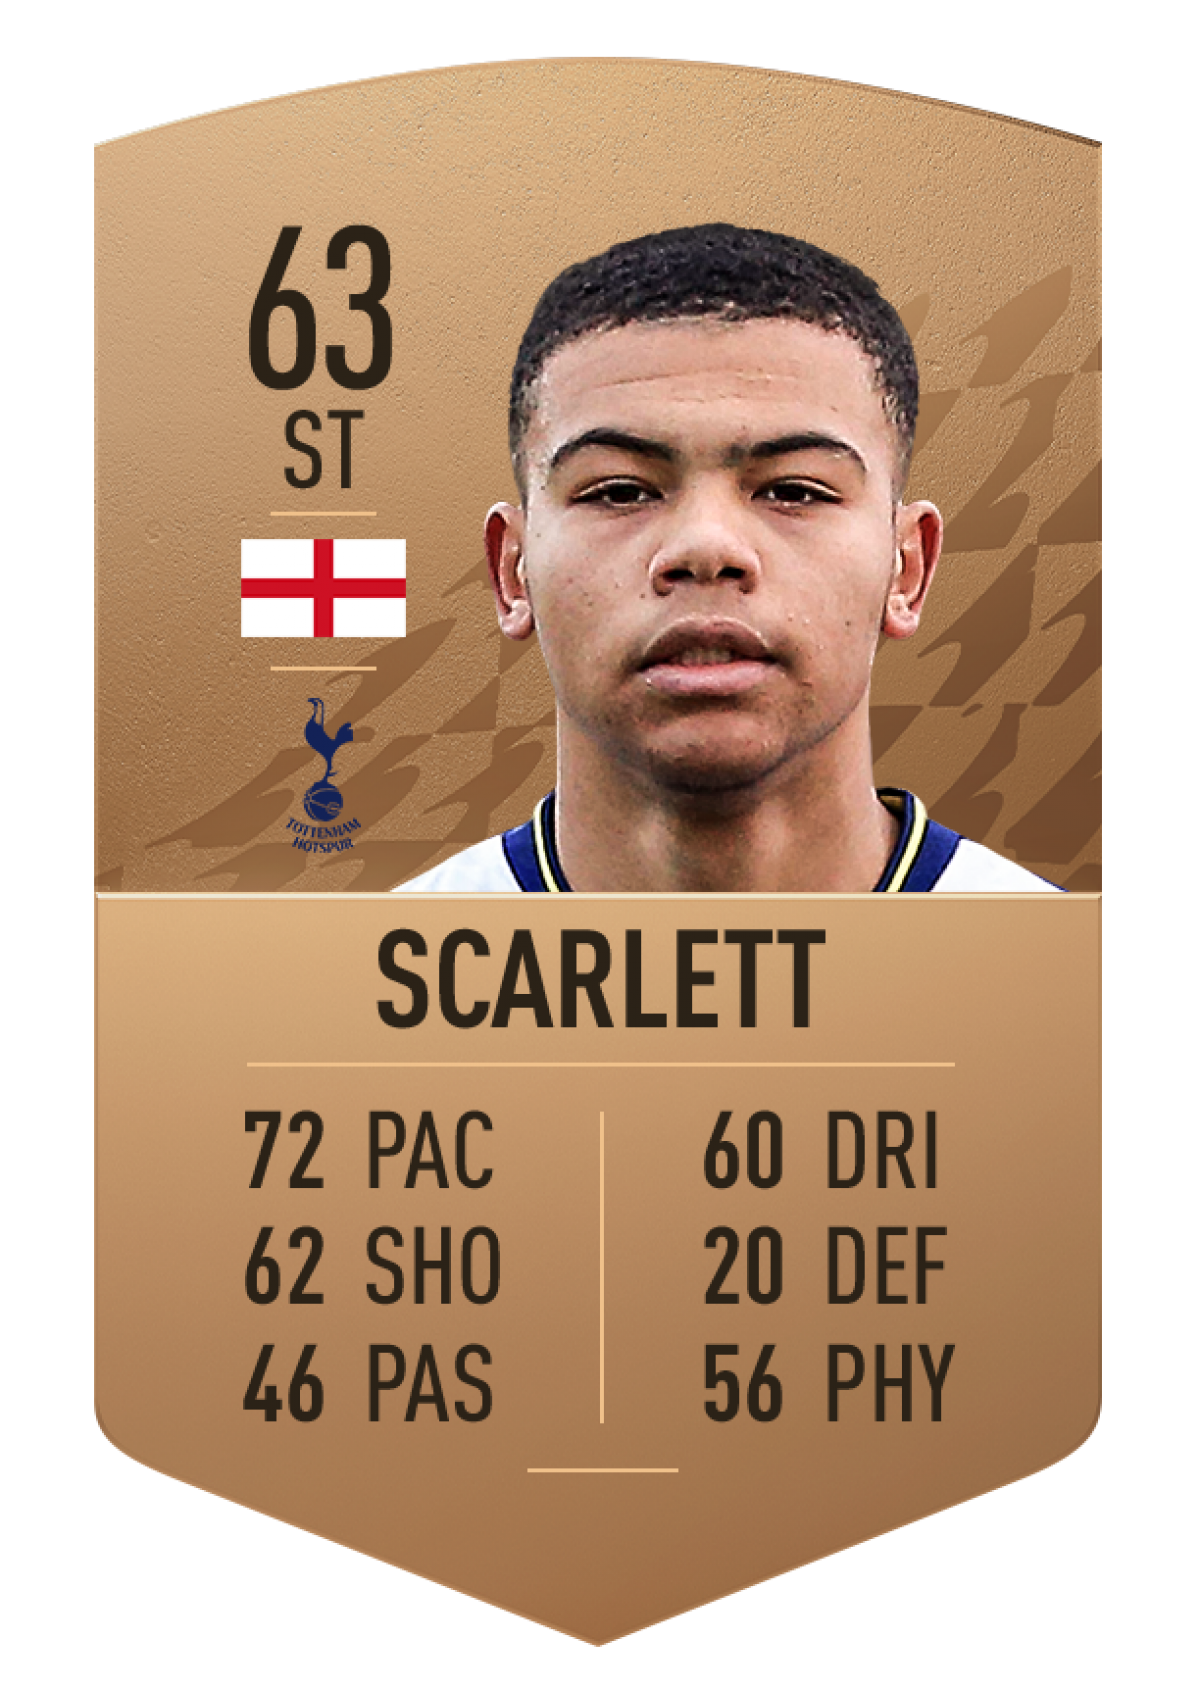 9. Dane Scarlett | Tottenham Hotspur | Chỉ số ban đầu: 63 | Chỉ số tiềm năng: 86 (+23)